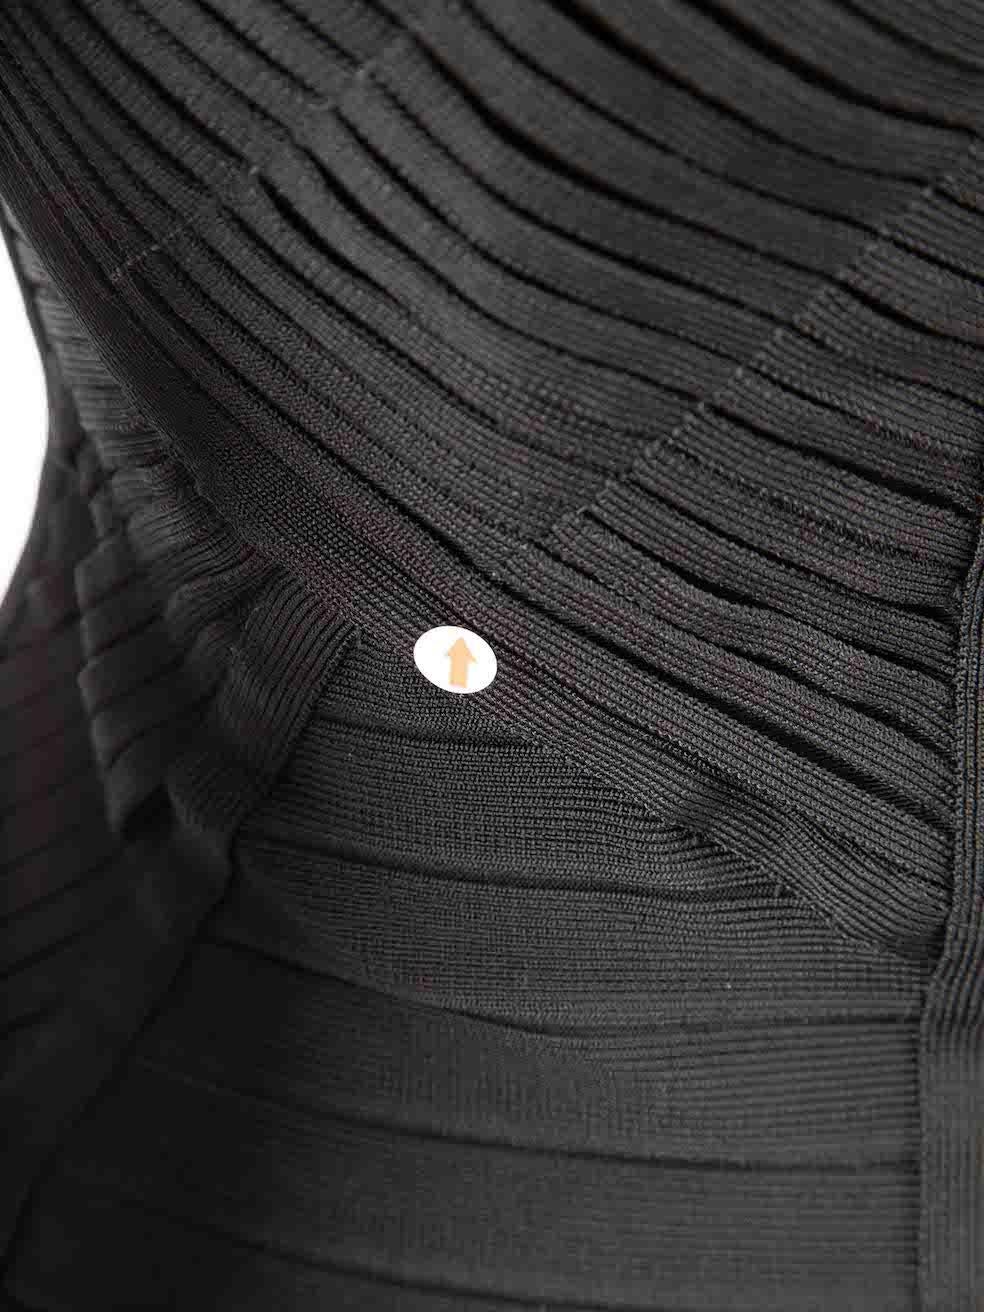 Herve Leger Black Strappy Long Sleeve Top Size XS Pour femmes en vente